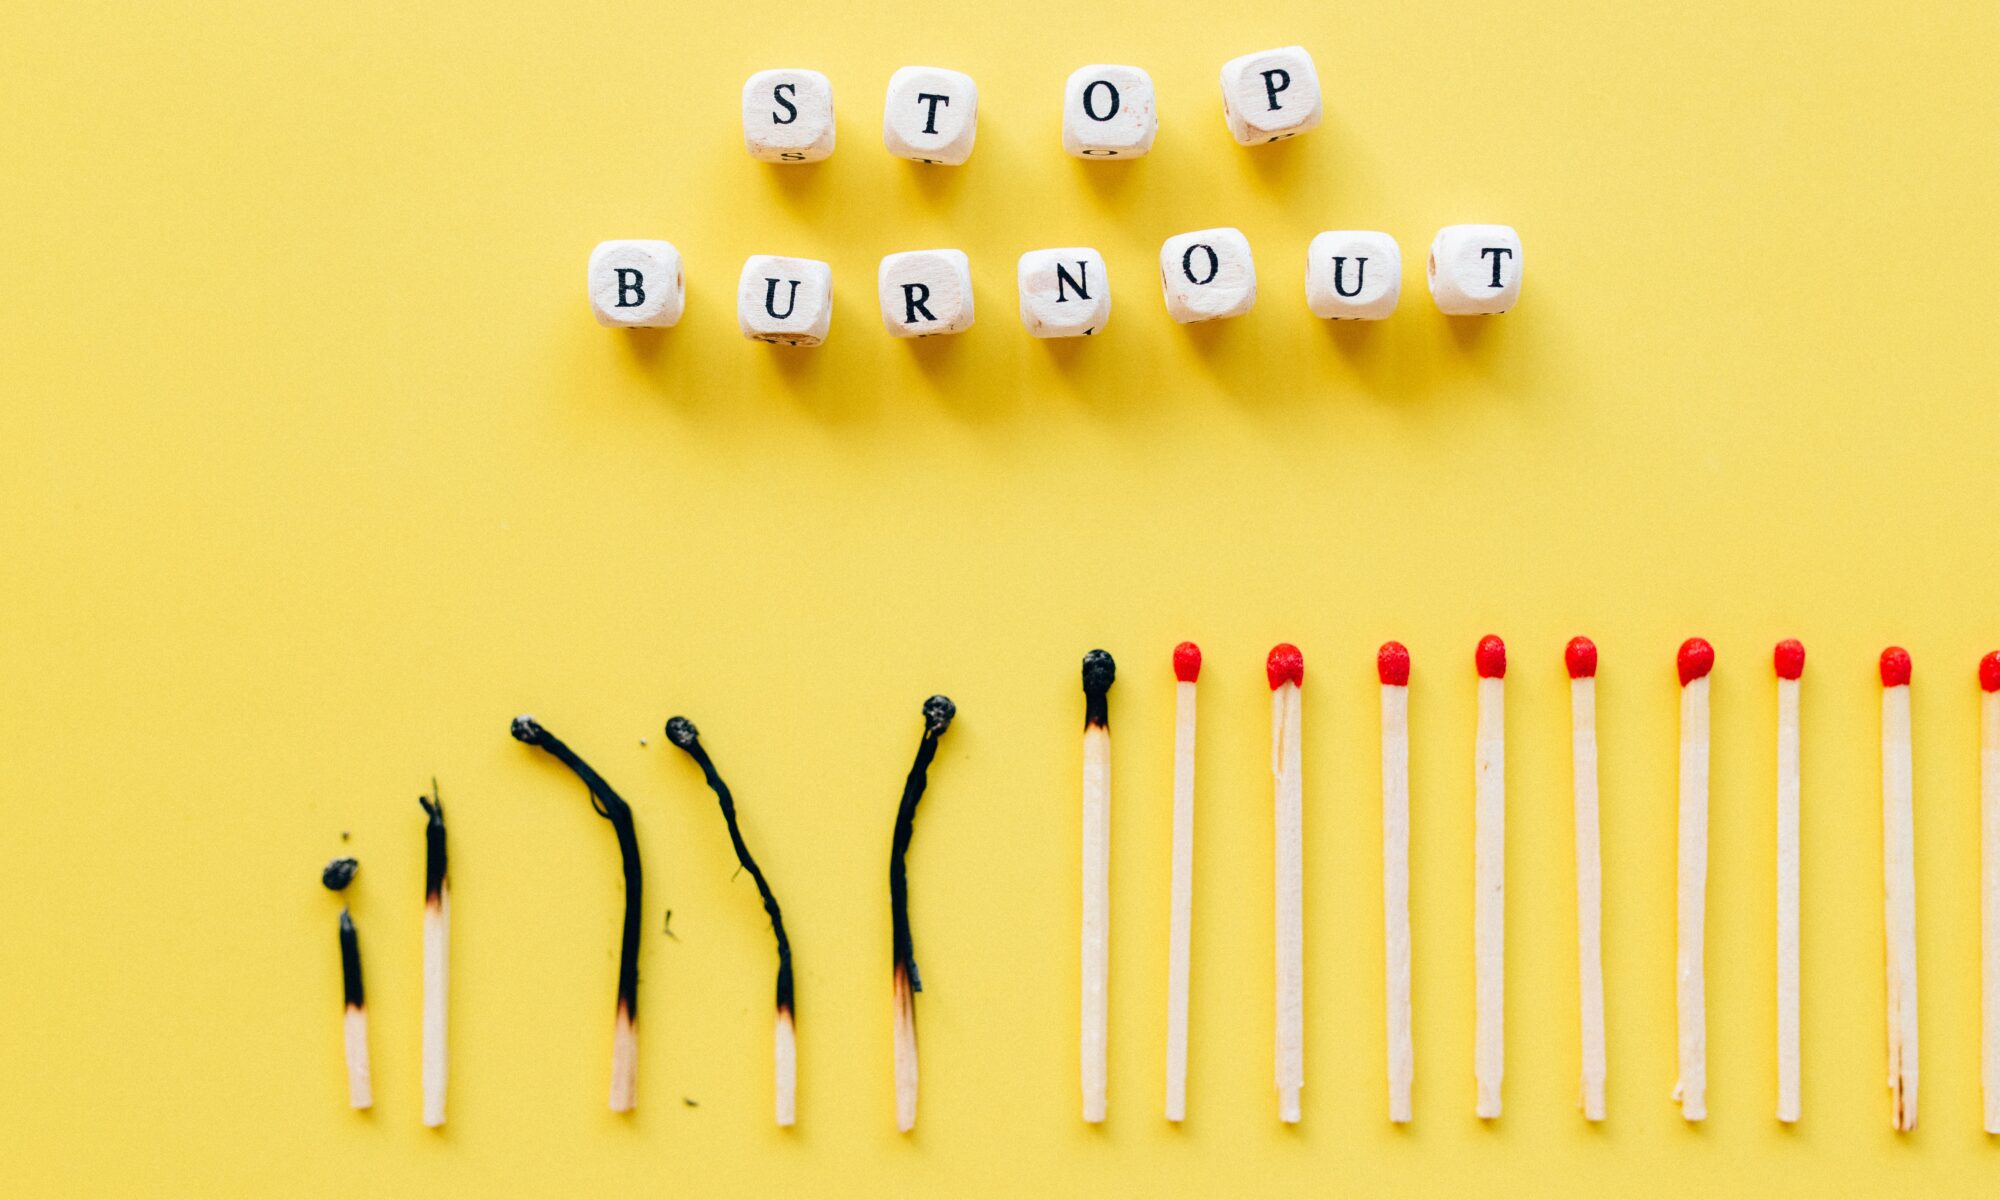 prevent burnout